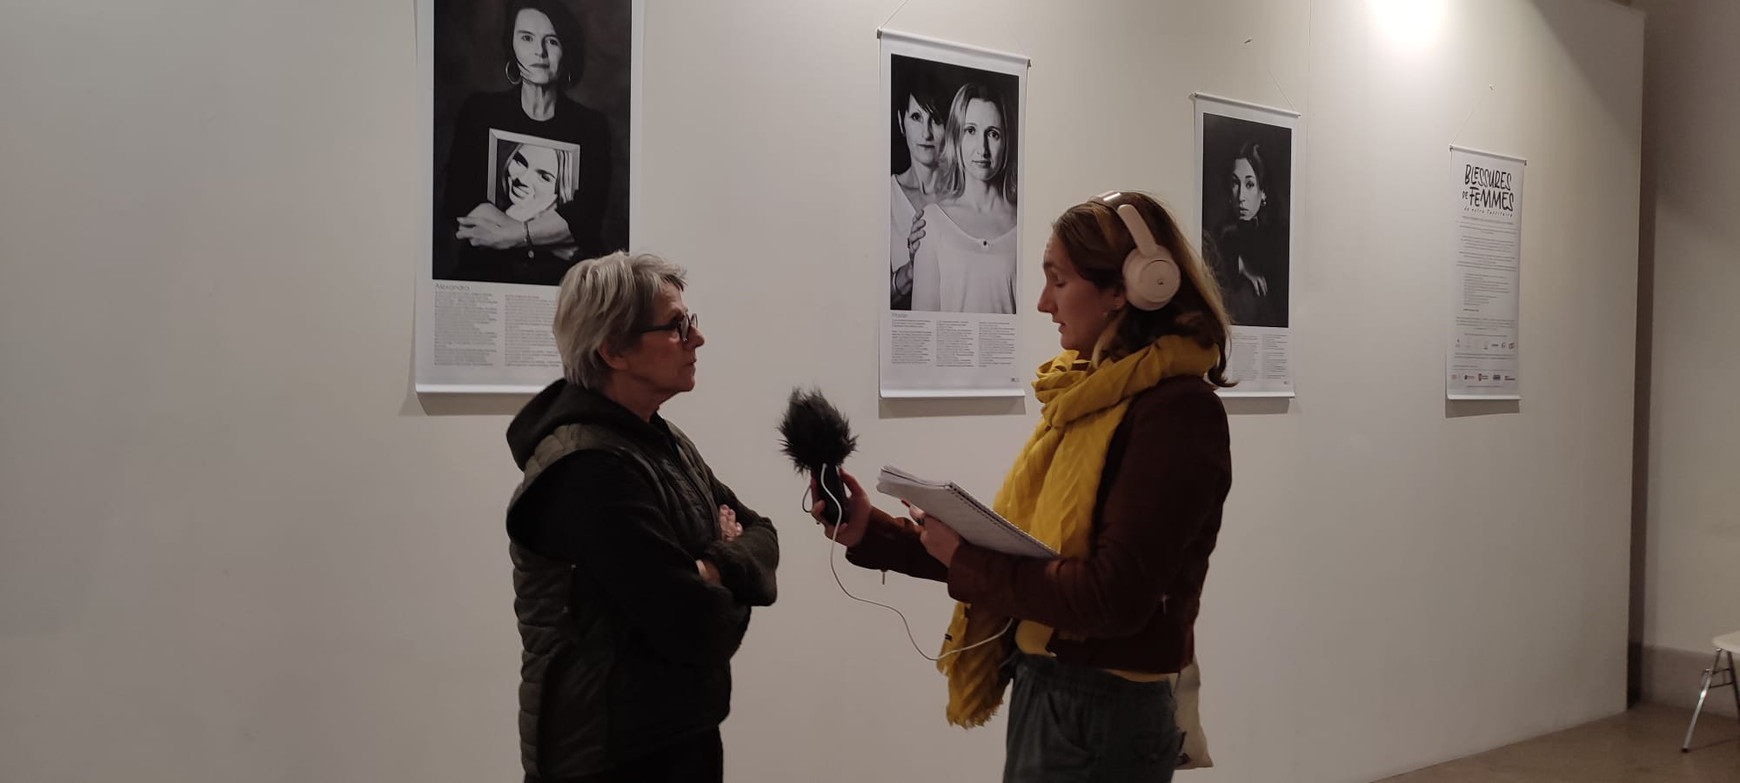 Catherine Cabrol, à l'exposition "Blessures de femmes", à Bordeaux "Blessures de femmes", avec la photographe Catherine Cabrol